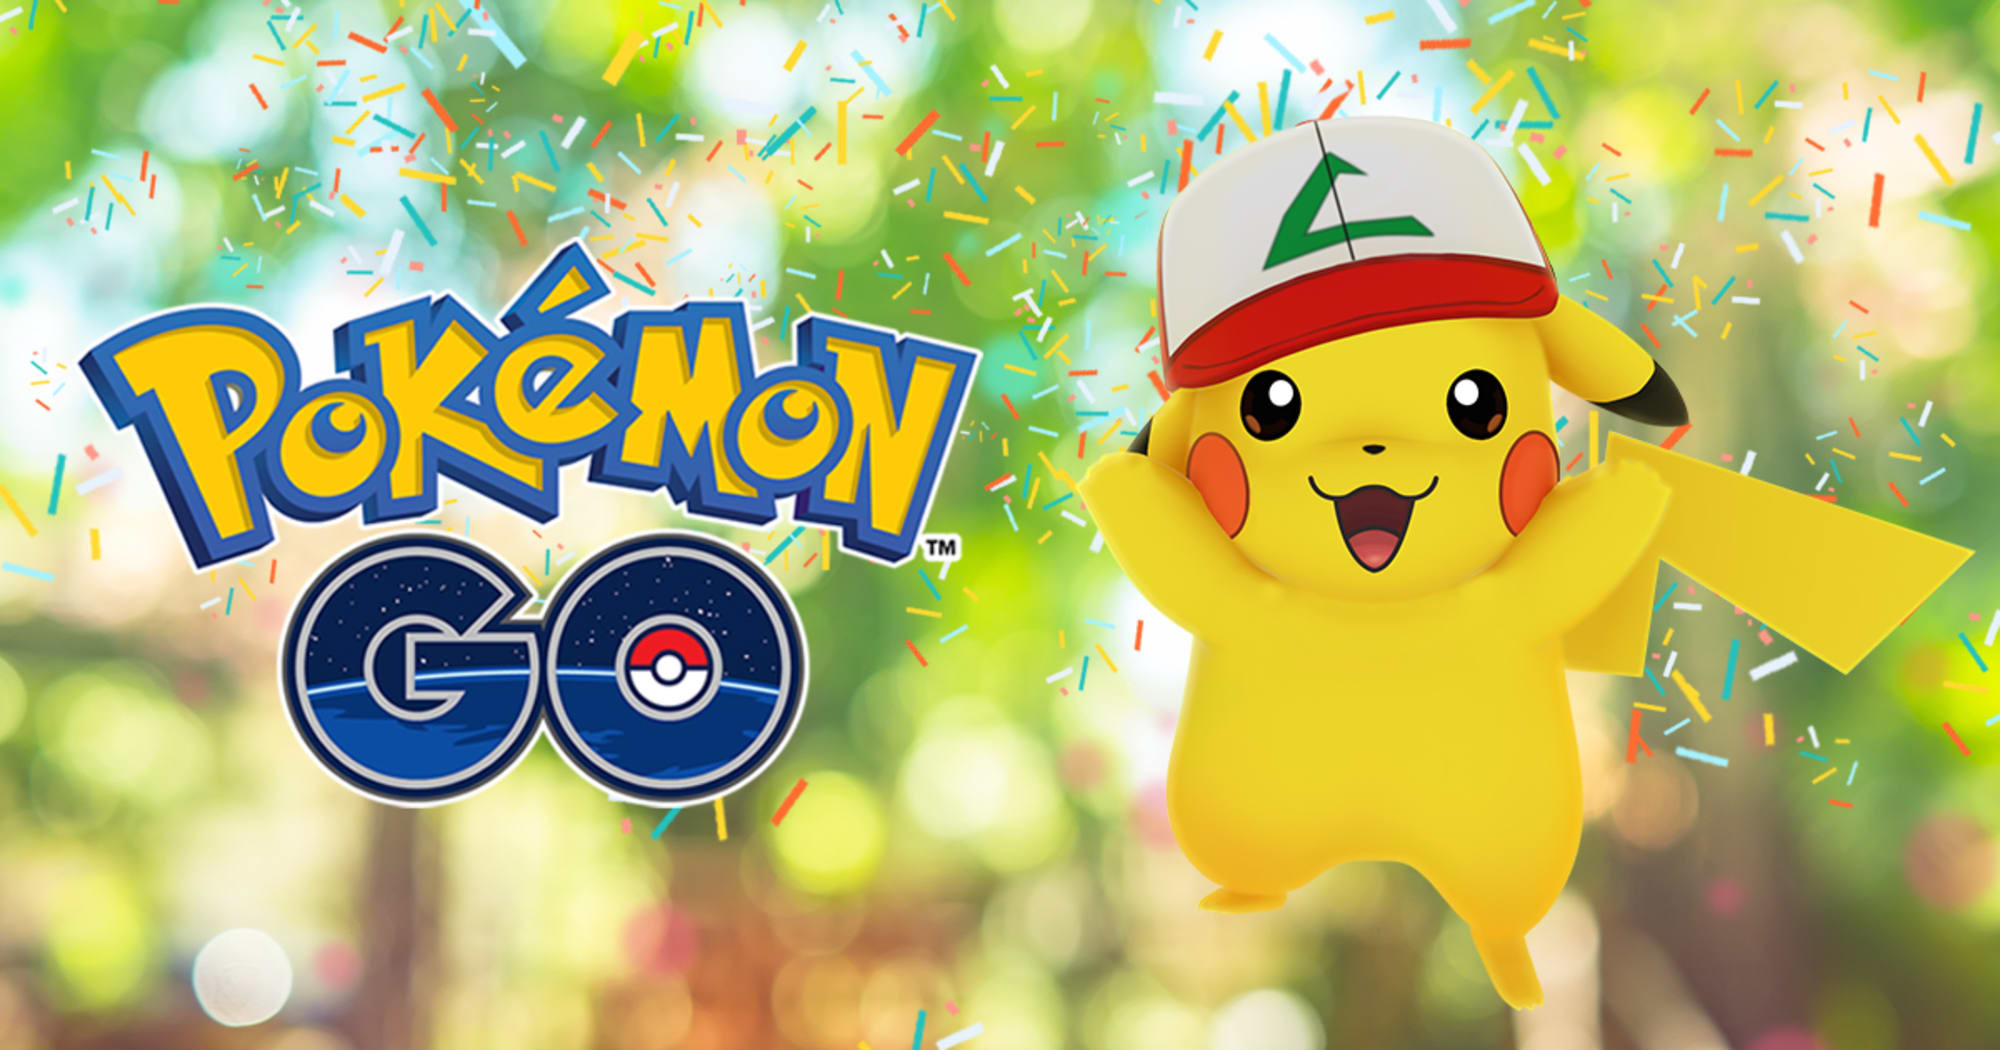 Les classiques de la Journée Communauté : Wattouat sur Pokémon Go, Ticket de l'étude spéciale du Community Day